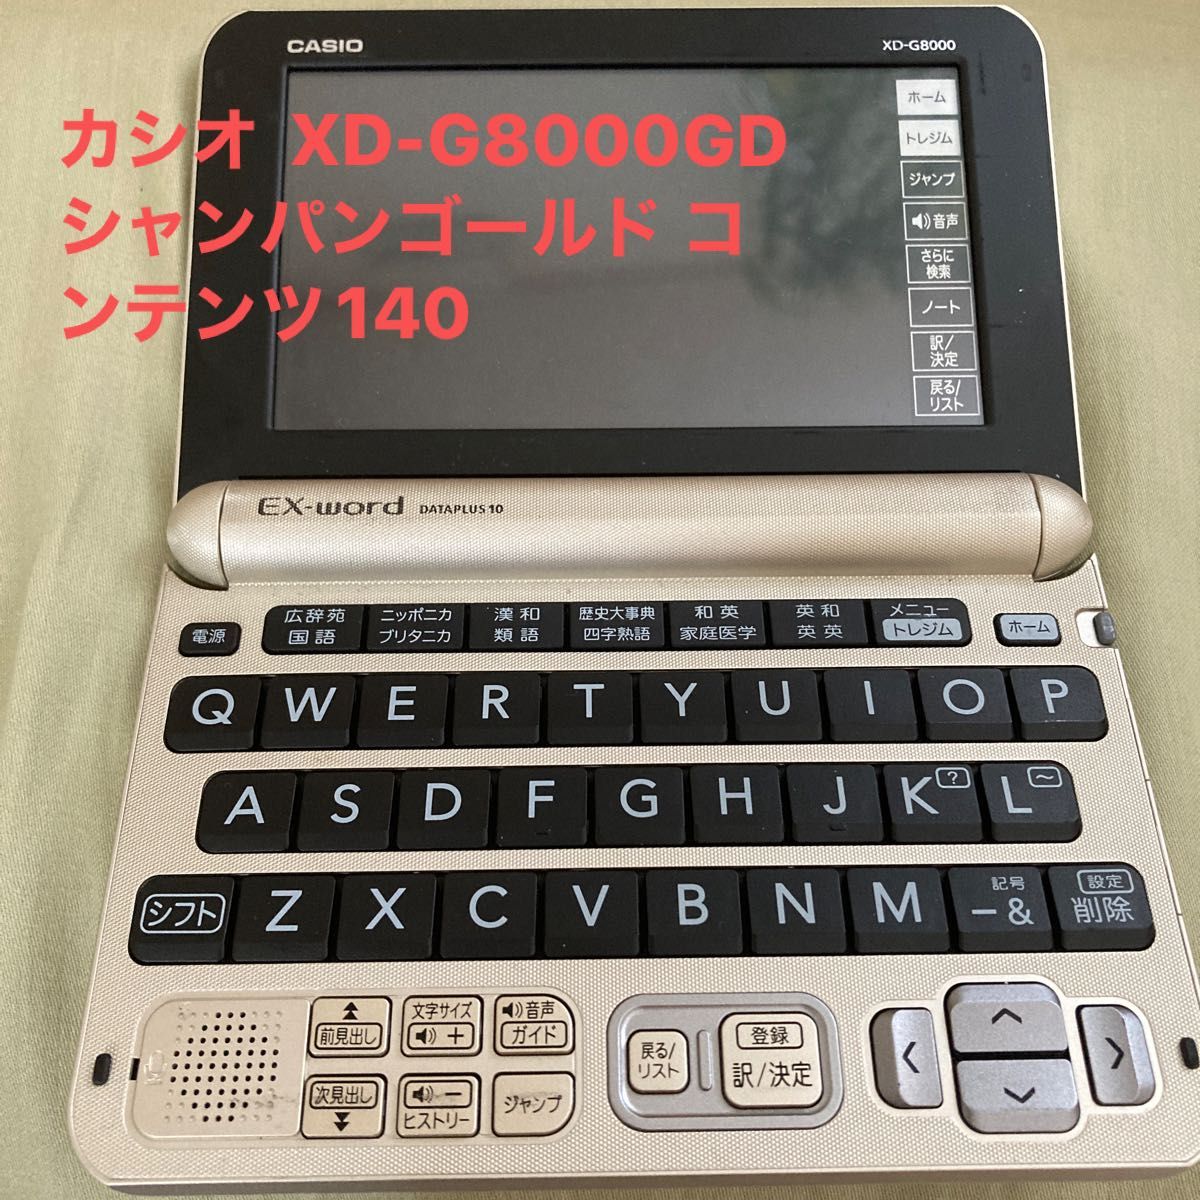 【超特価】カシオ 電子辞書 エクスワード XD-G8000GD シャンパンゴールド コンテンツ140 EX-word